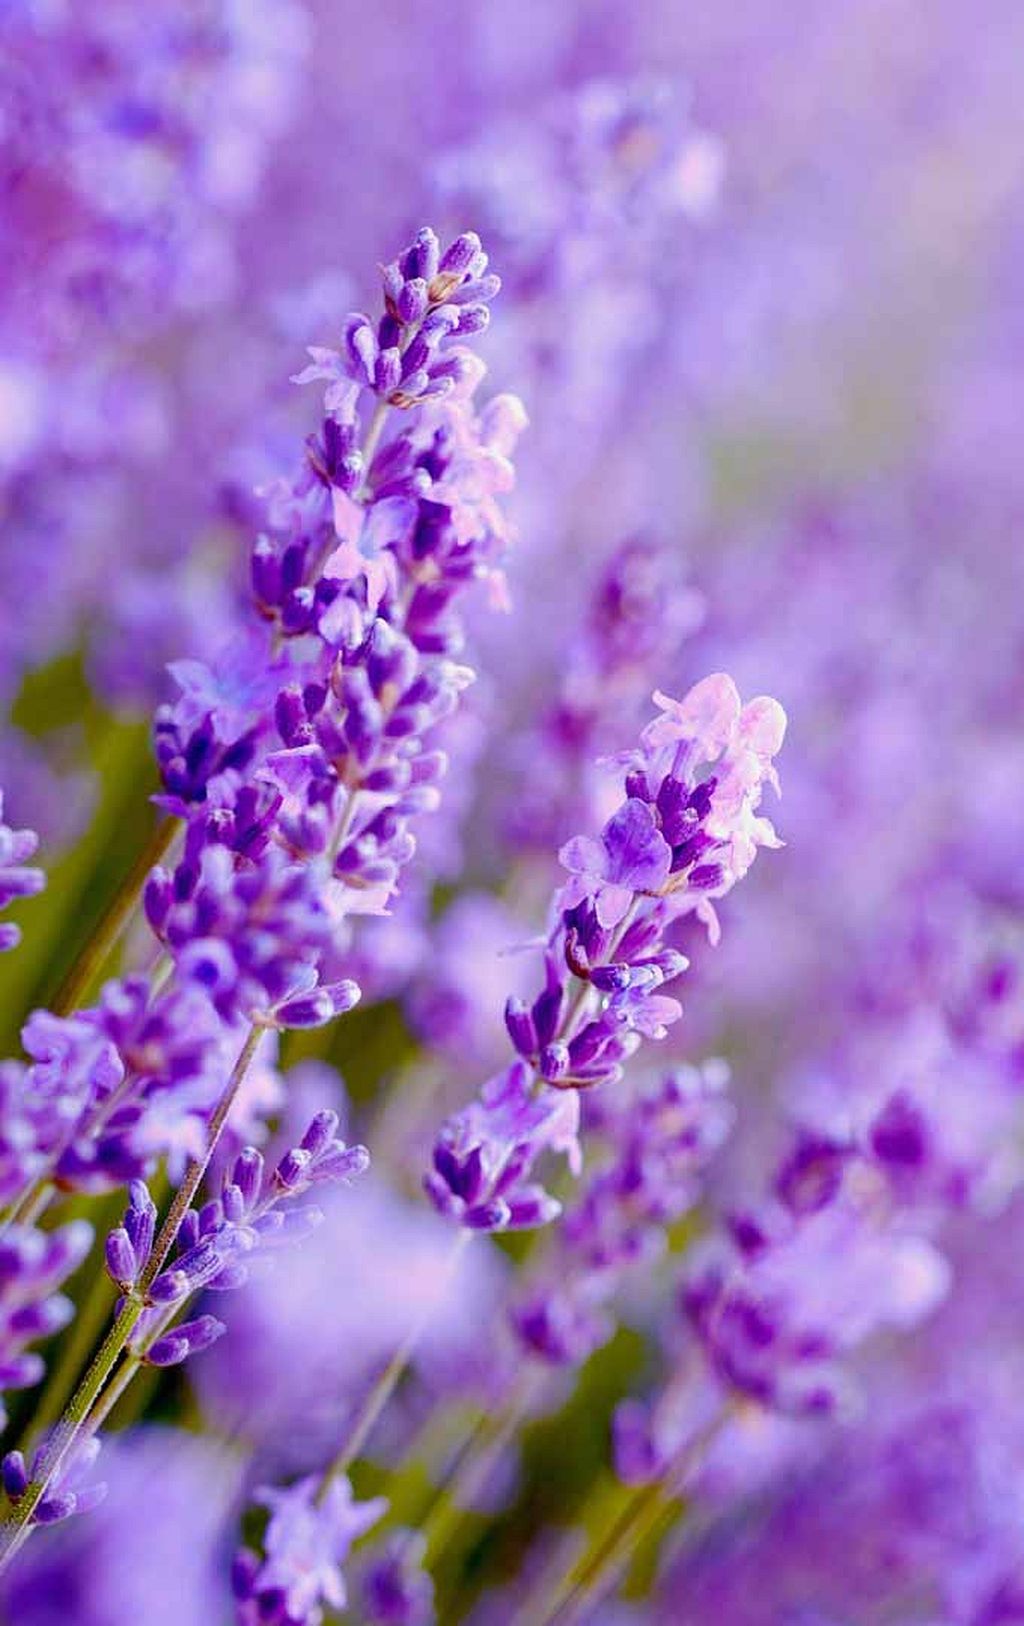 Tìm hiểu với hơn 111 hình nền bông hoa màu tím tuyệt vời nhất ...